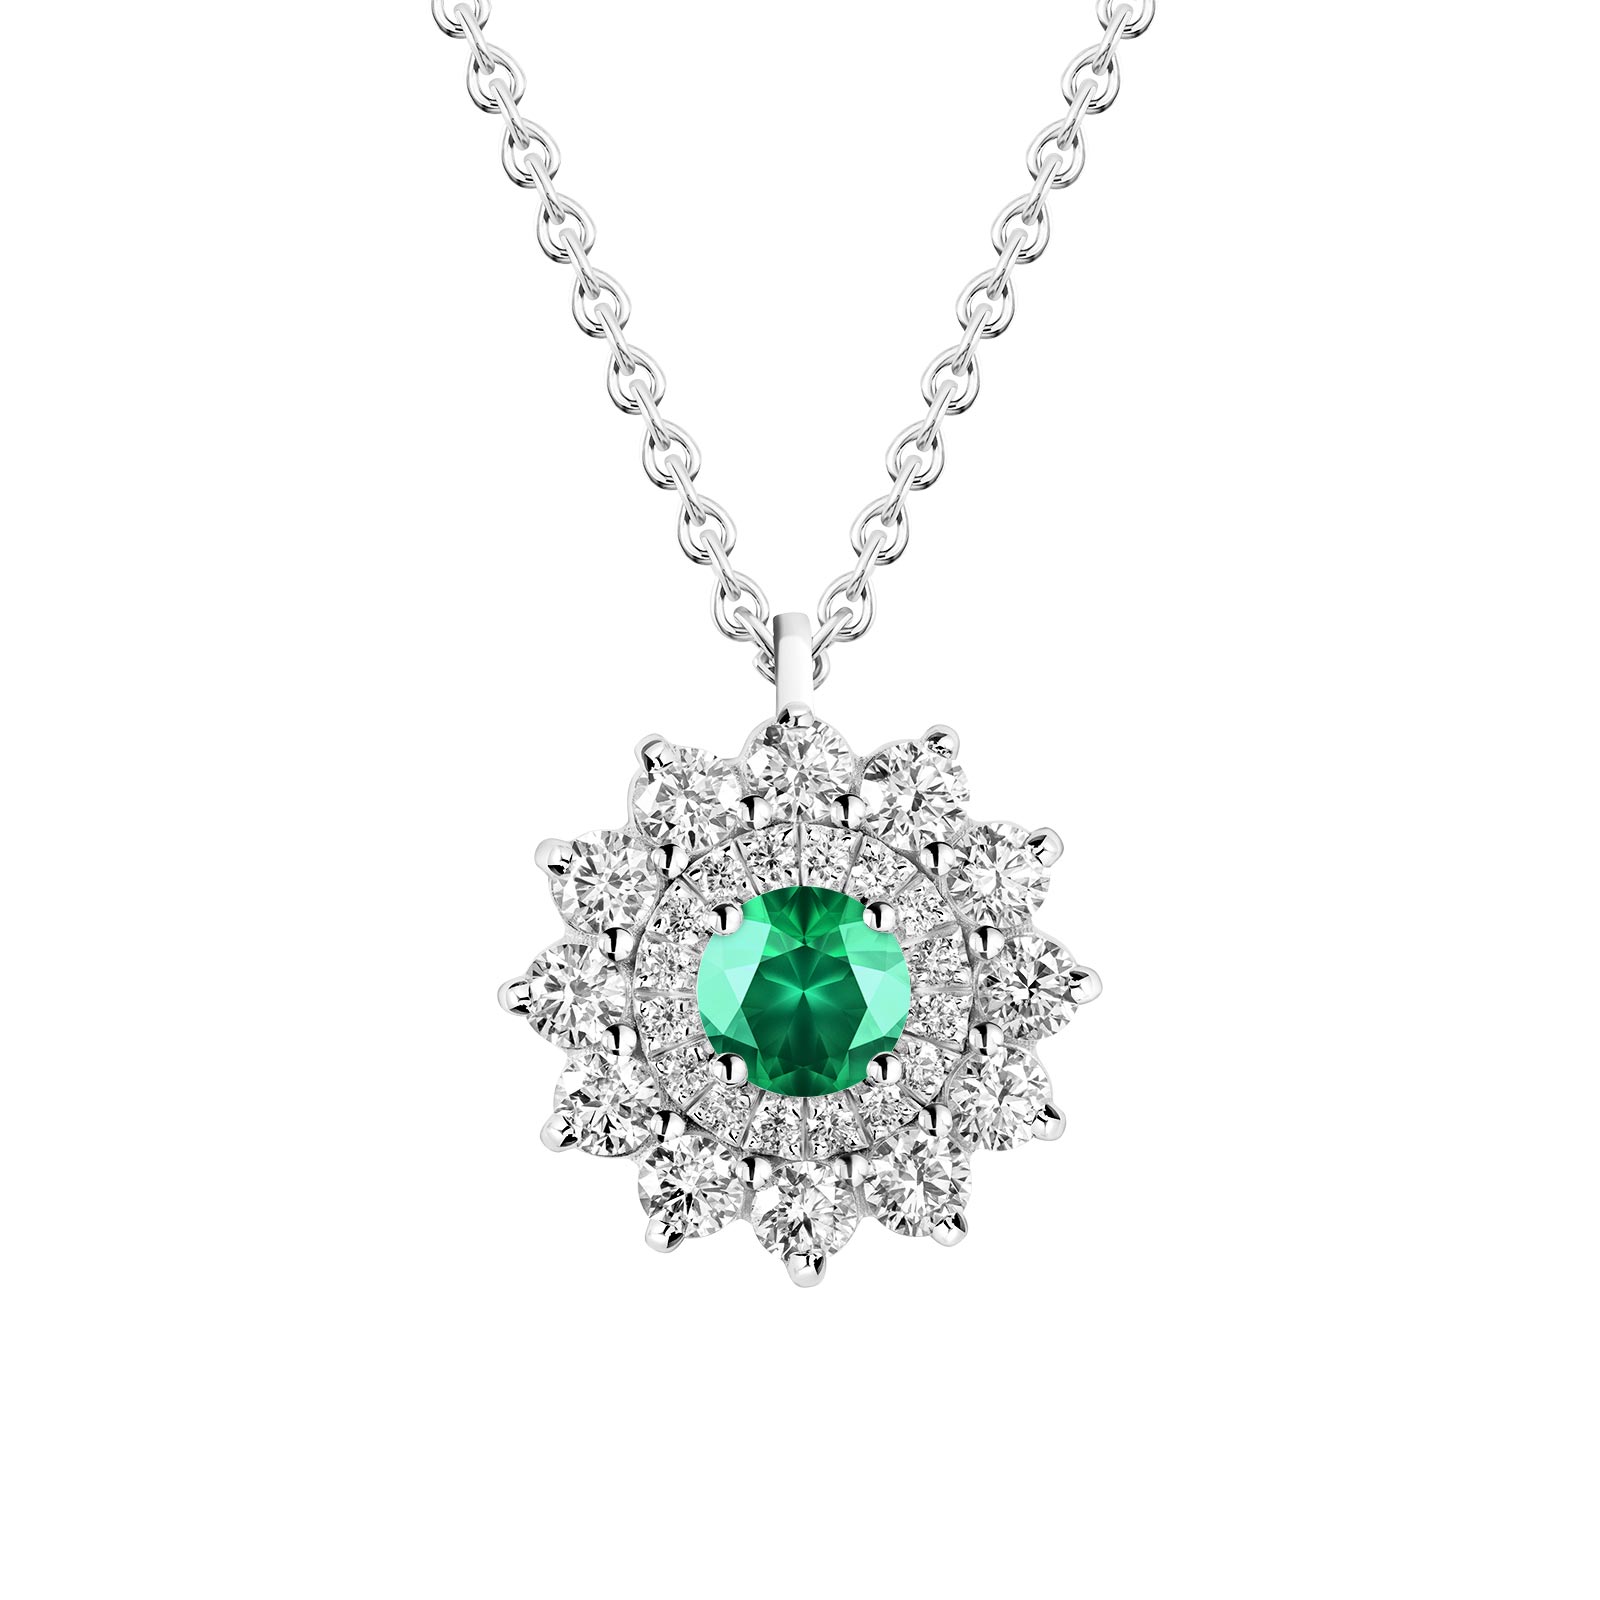 Pendant White gold Emerald and diamonds Lefkos 1